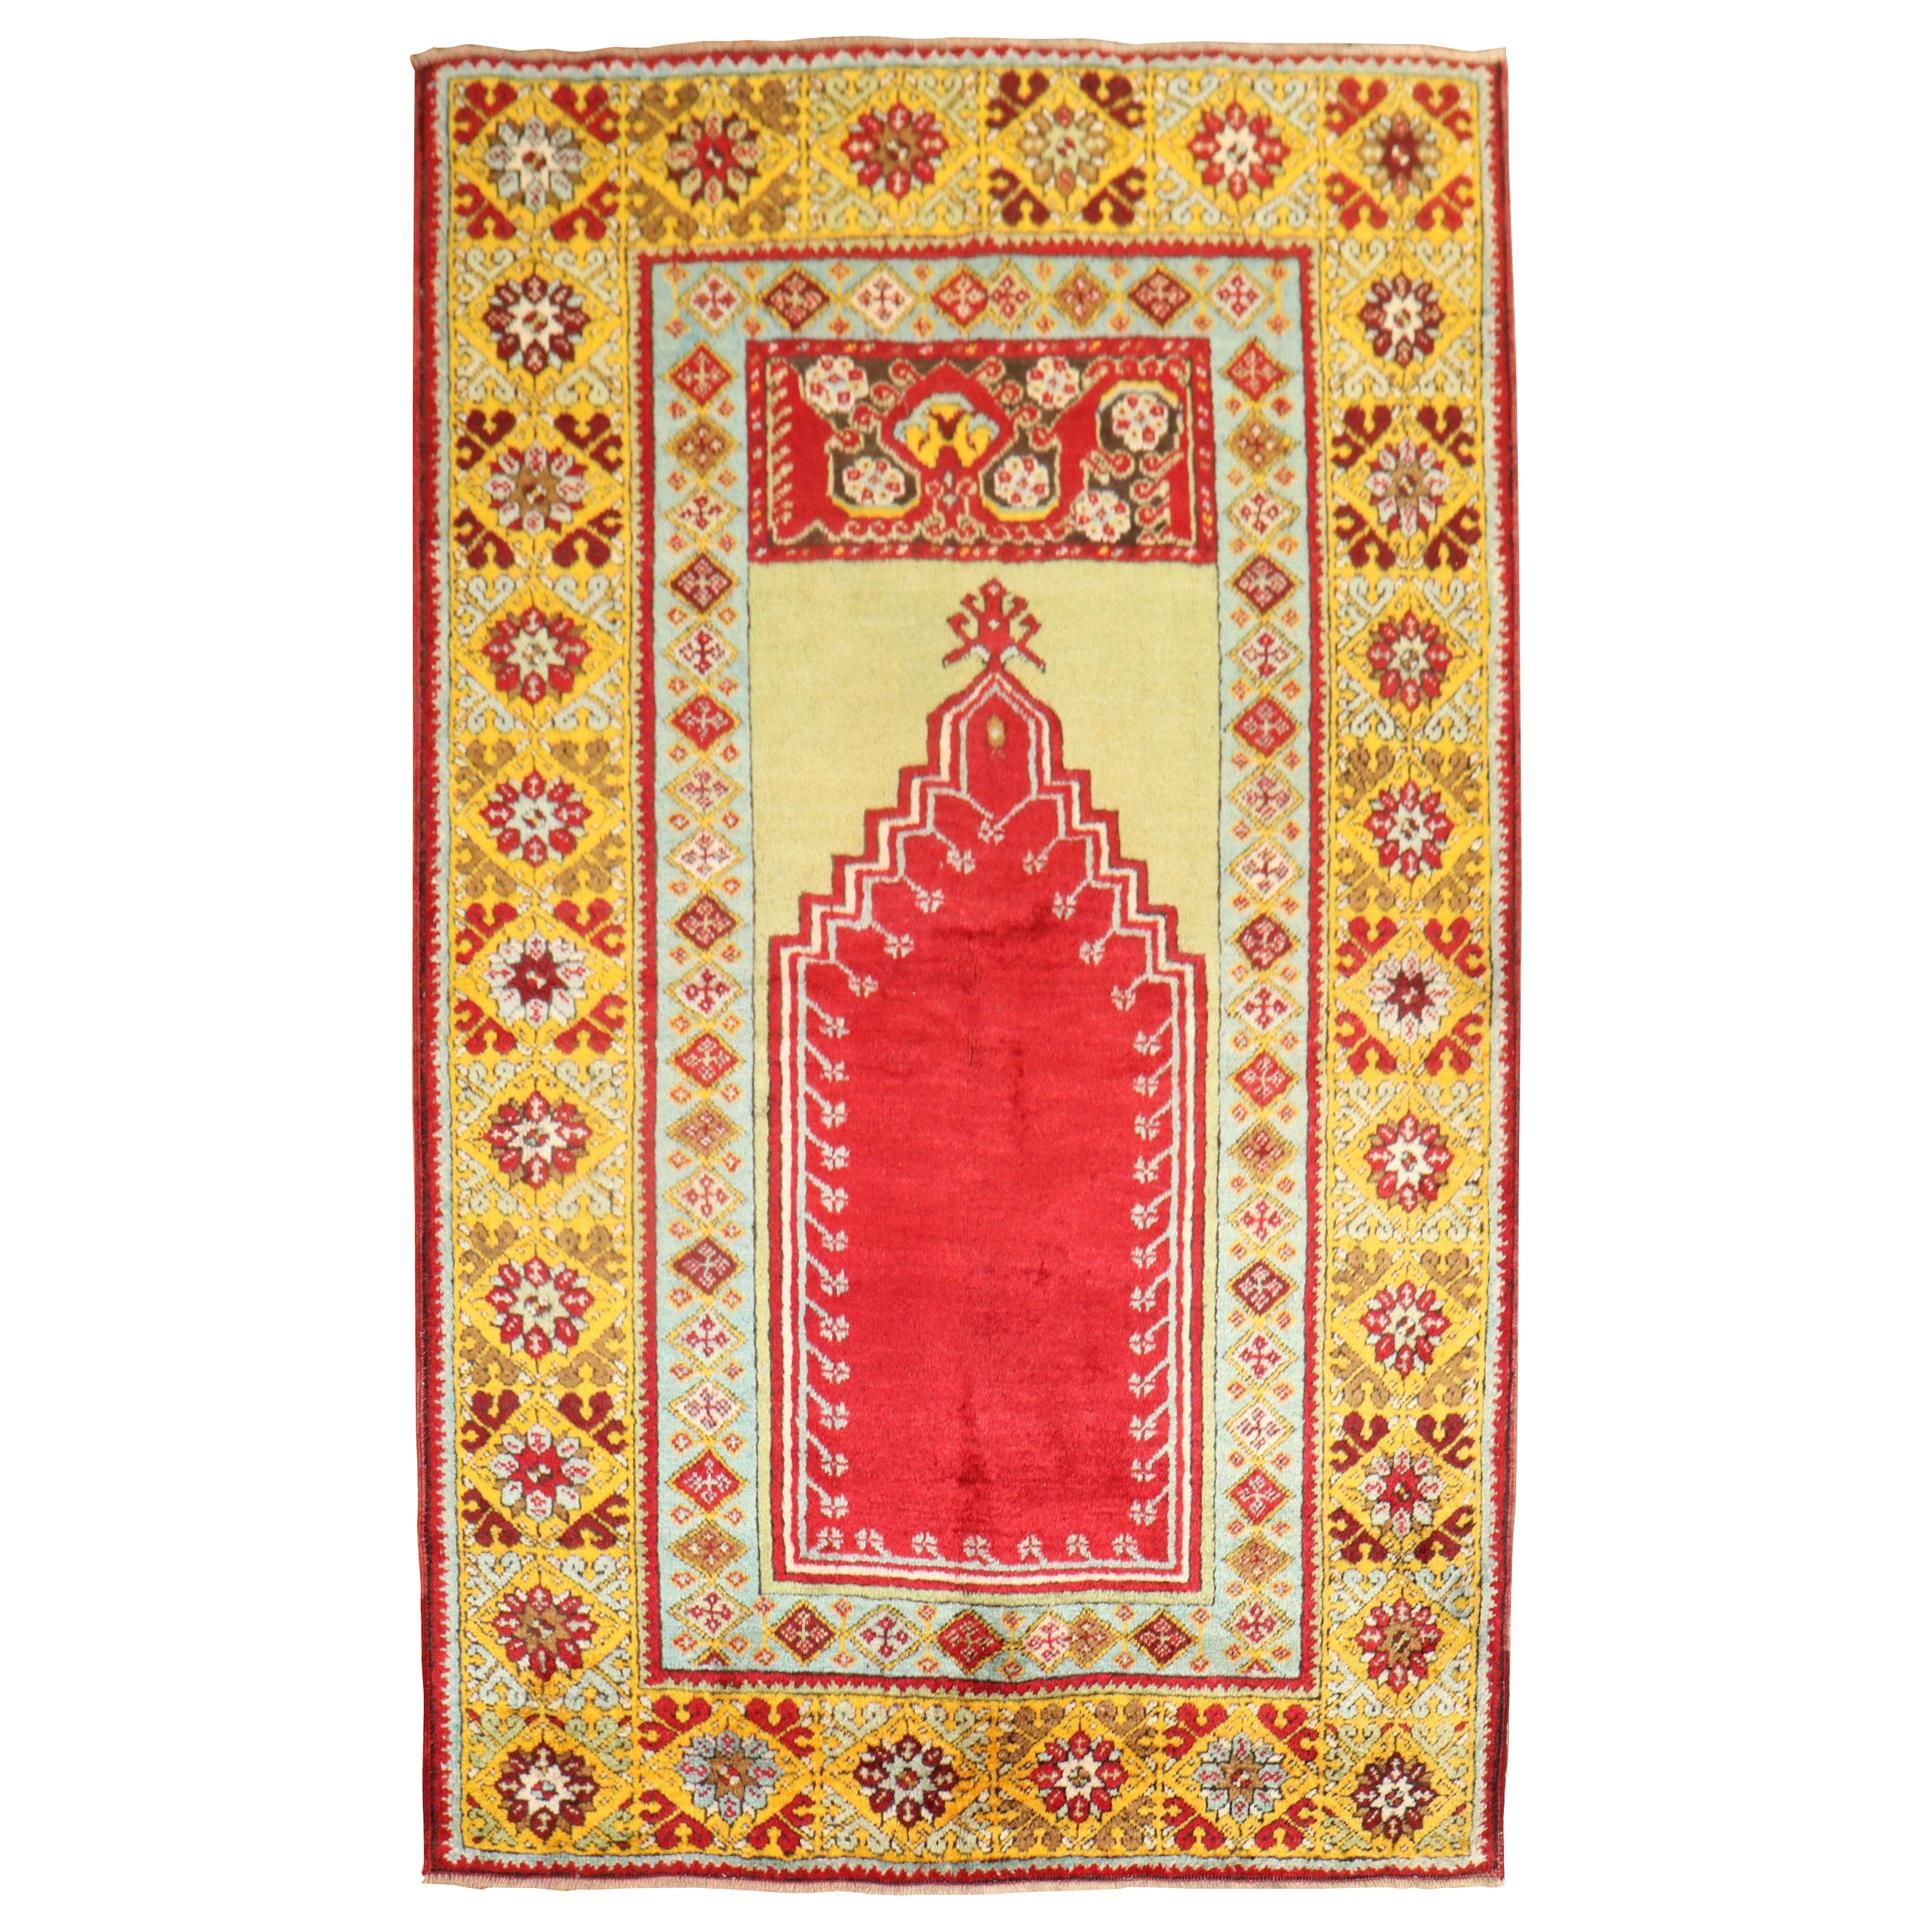 Colorful Antique Turkish Oushak Prayer Rug